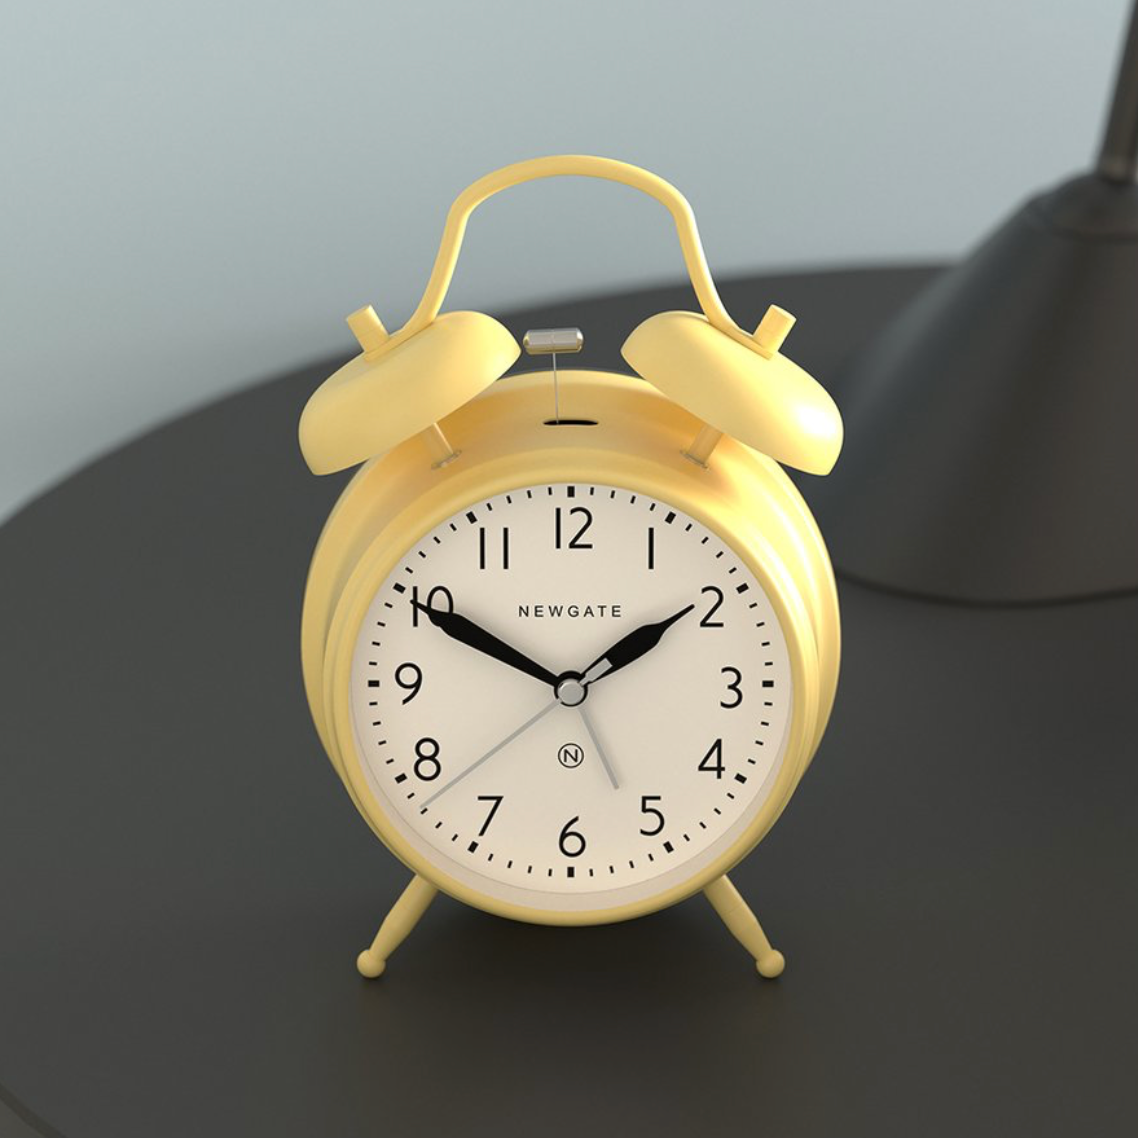 Newgate Covent Garden Alarm Clock, Squeezy Lemon